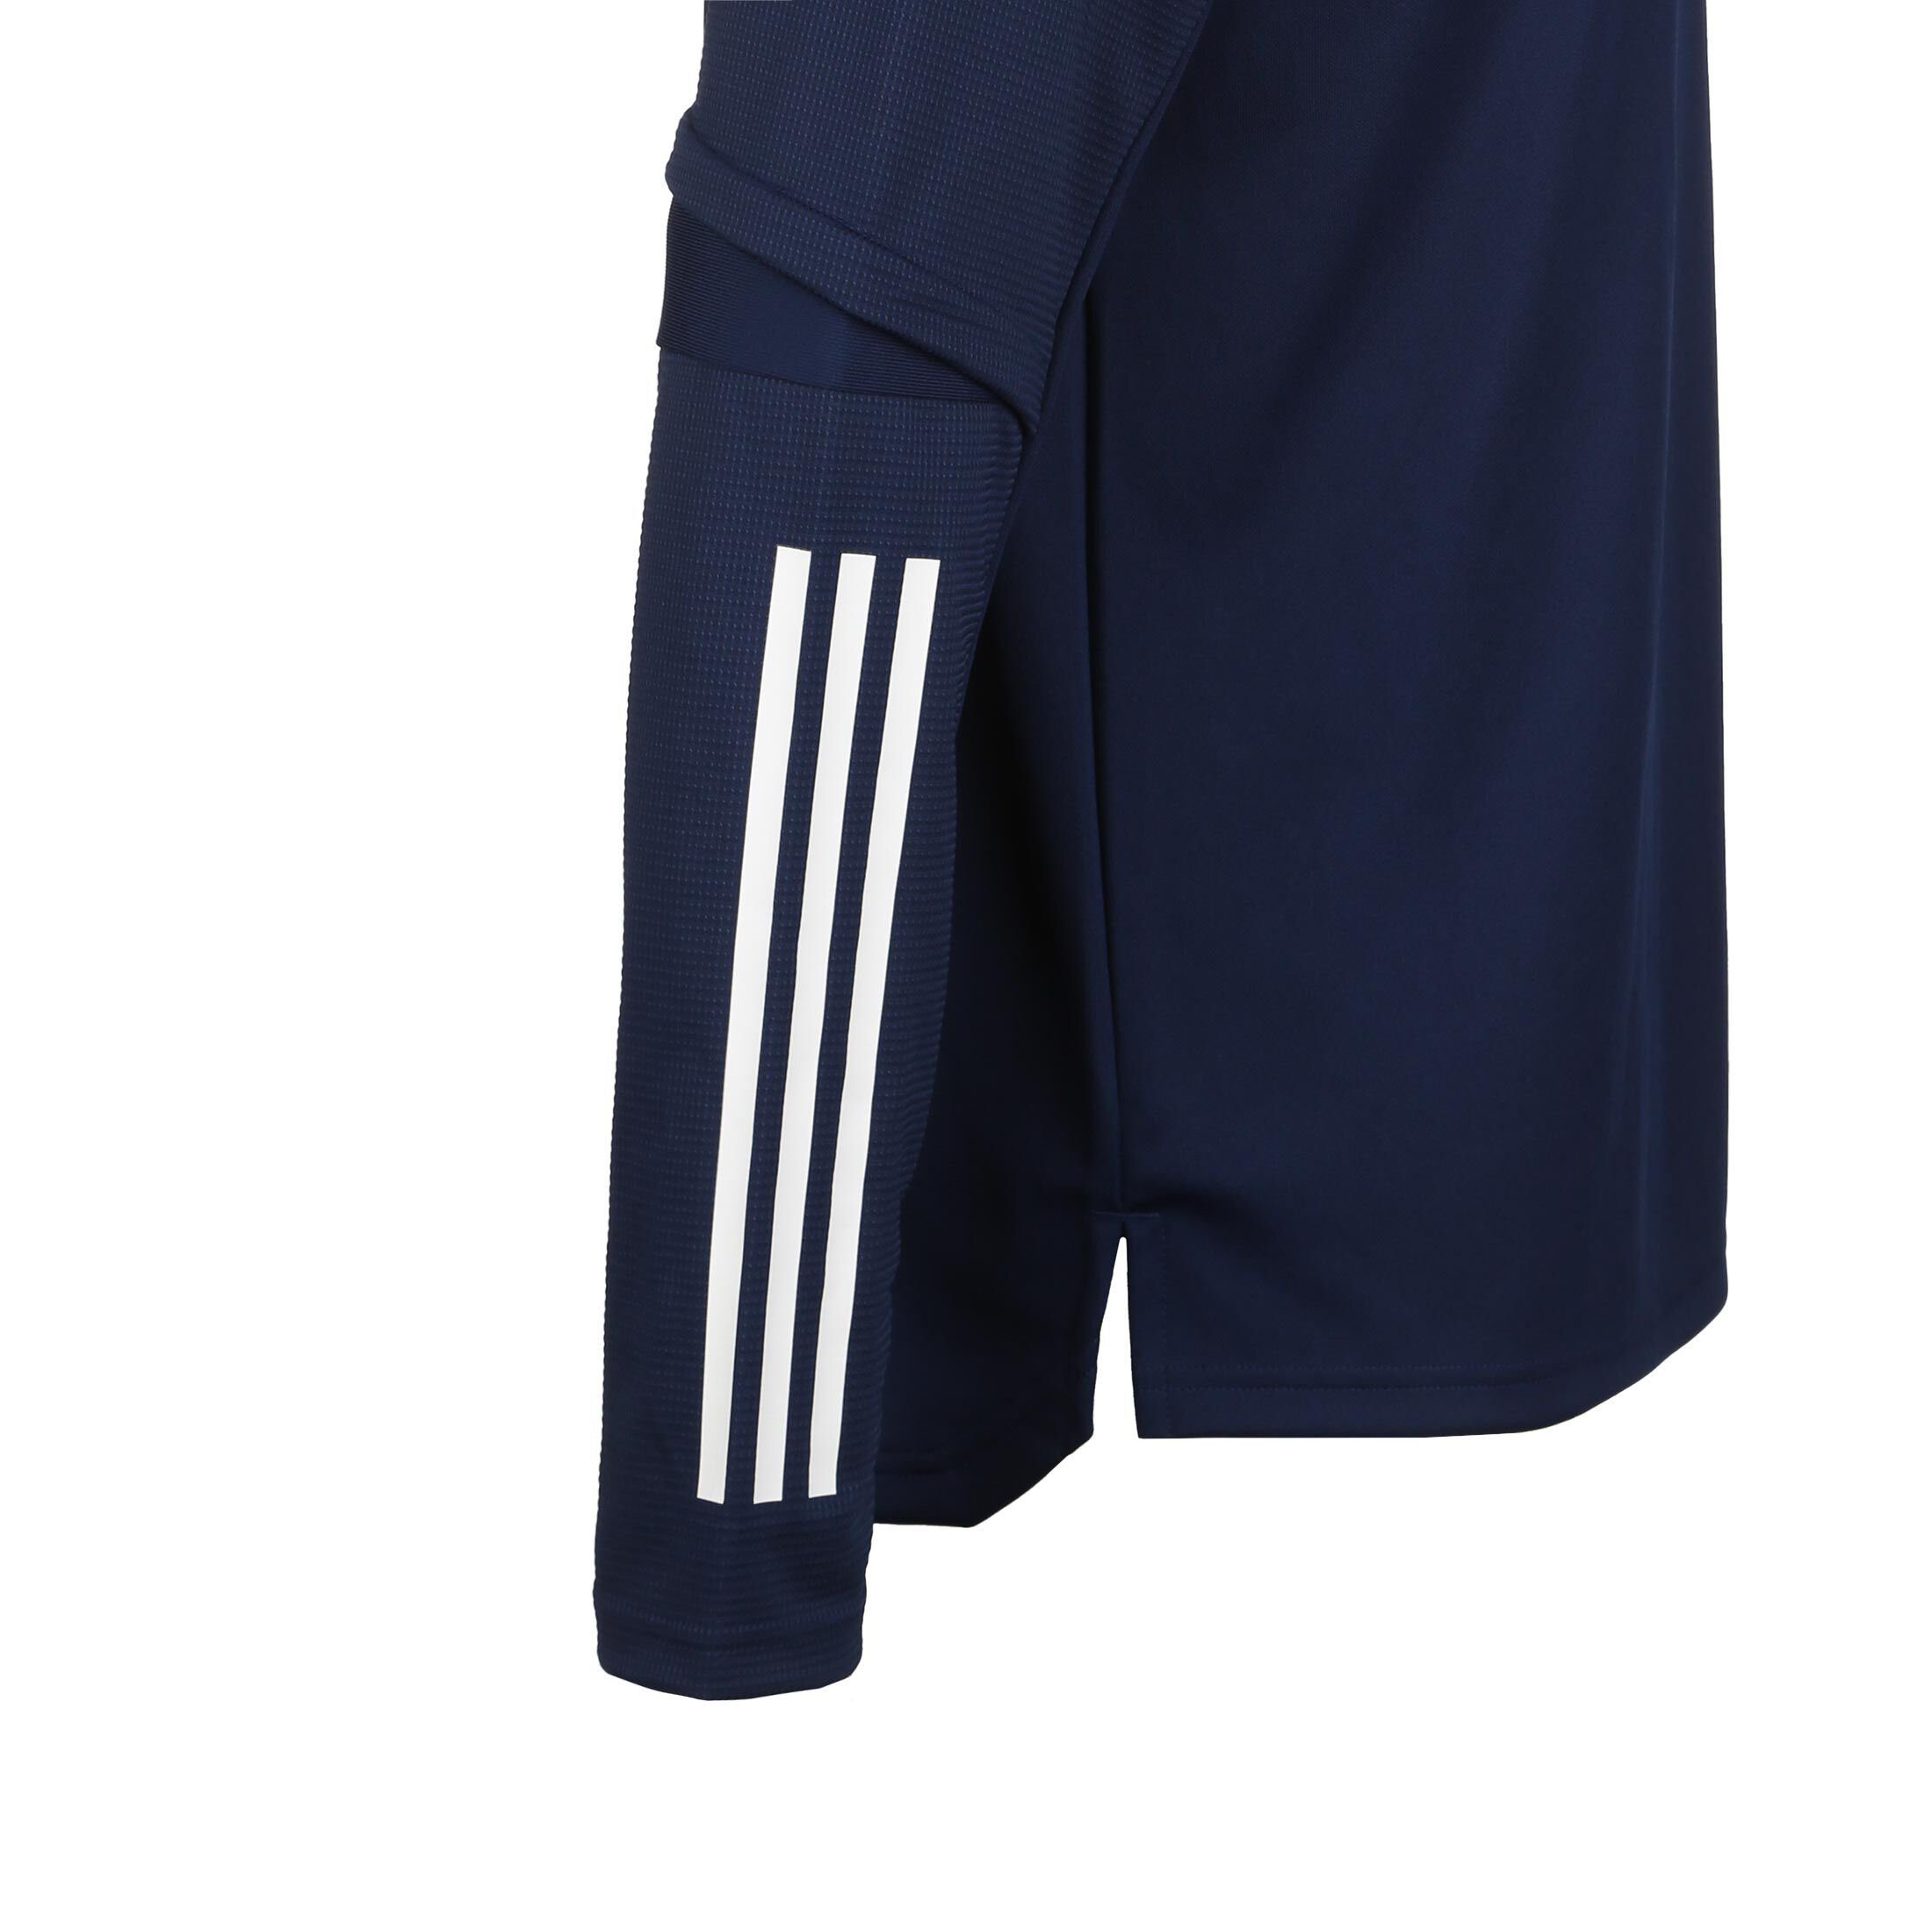 Herren Trainingssweat Condivo adidas Performance Sweatshirt 20 weiß / dunkelblau